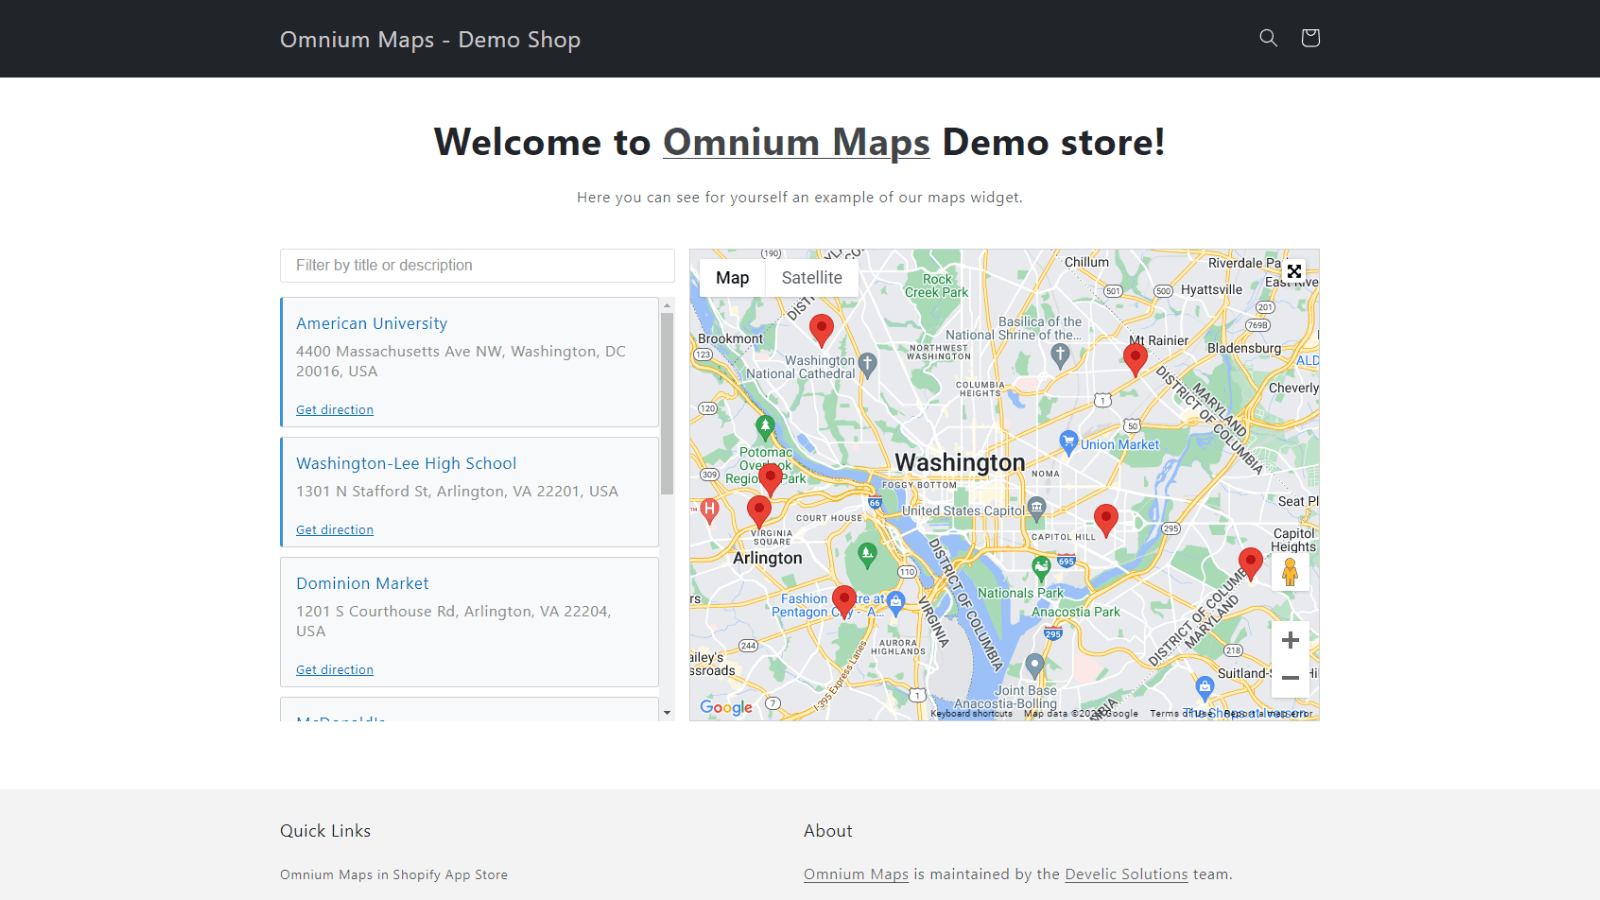 Omnium Maps - Demo Shop